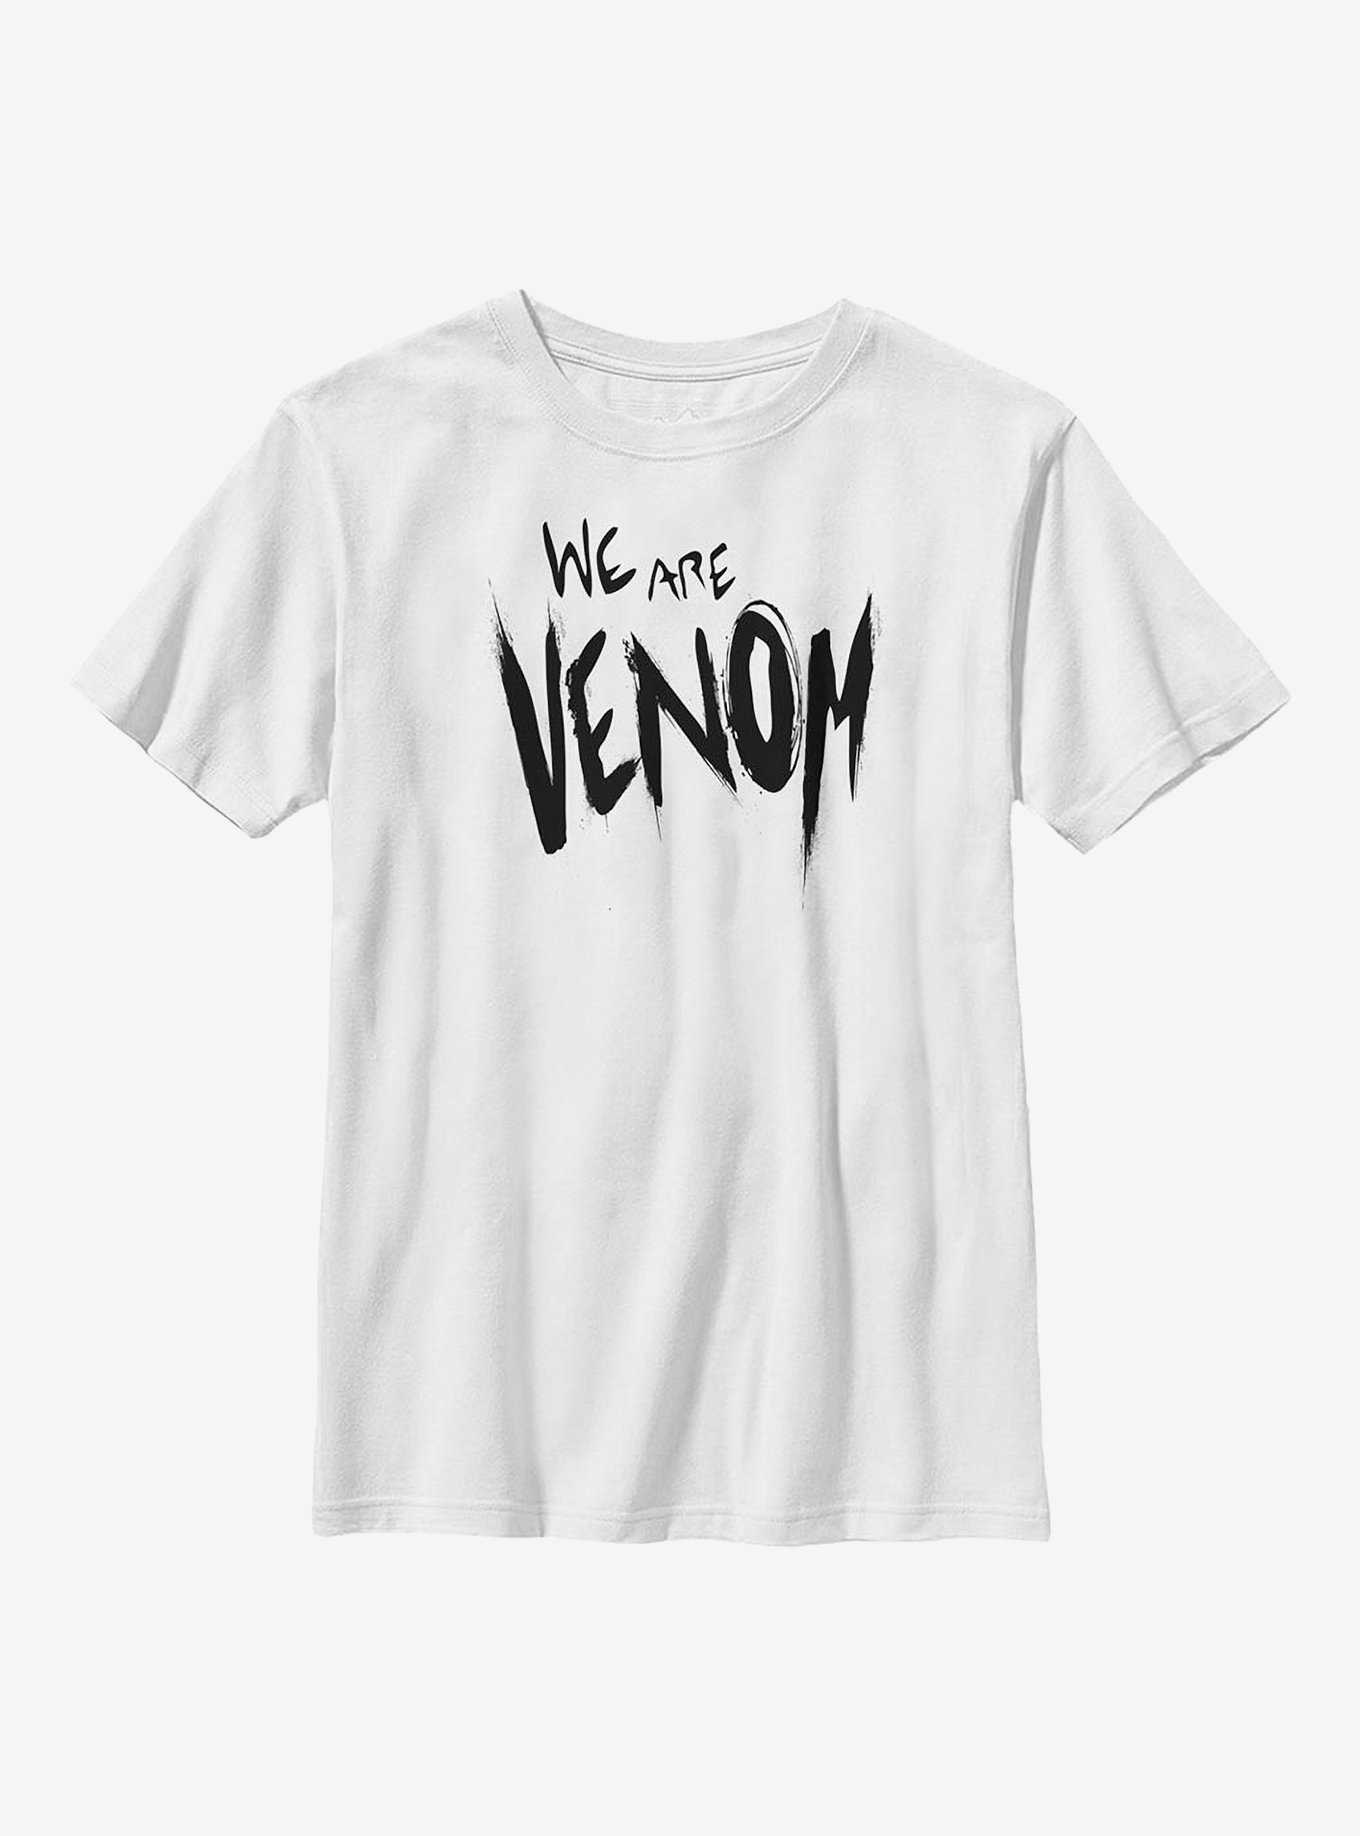 Blouse Eloise noir – Venom collection